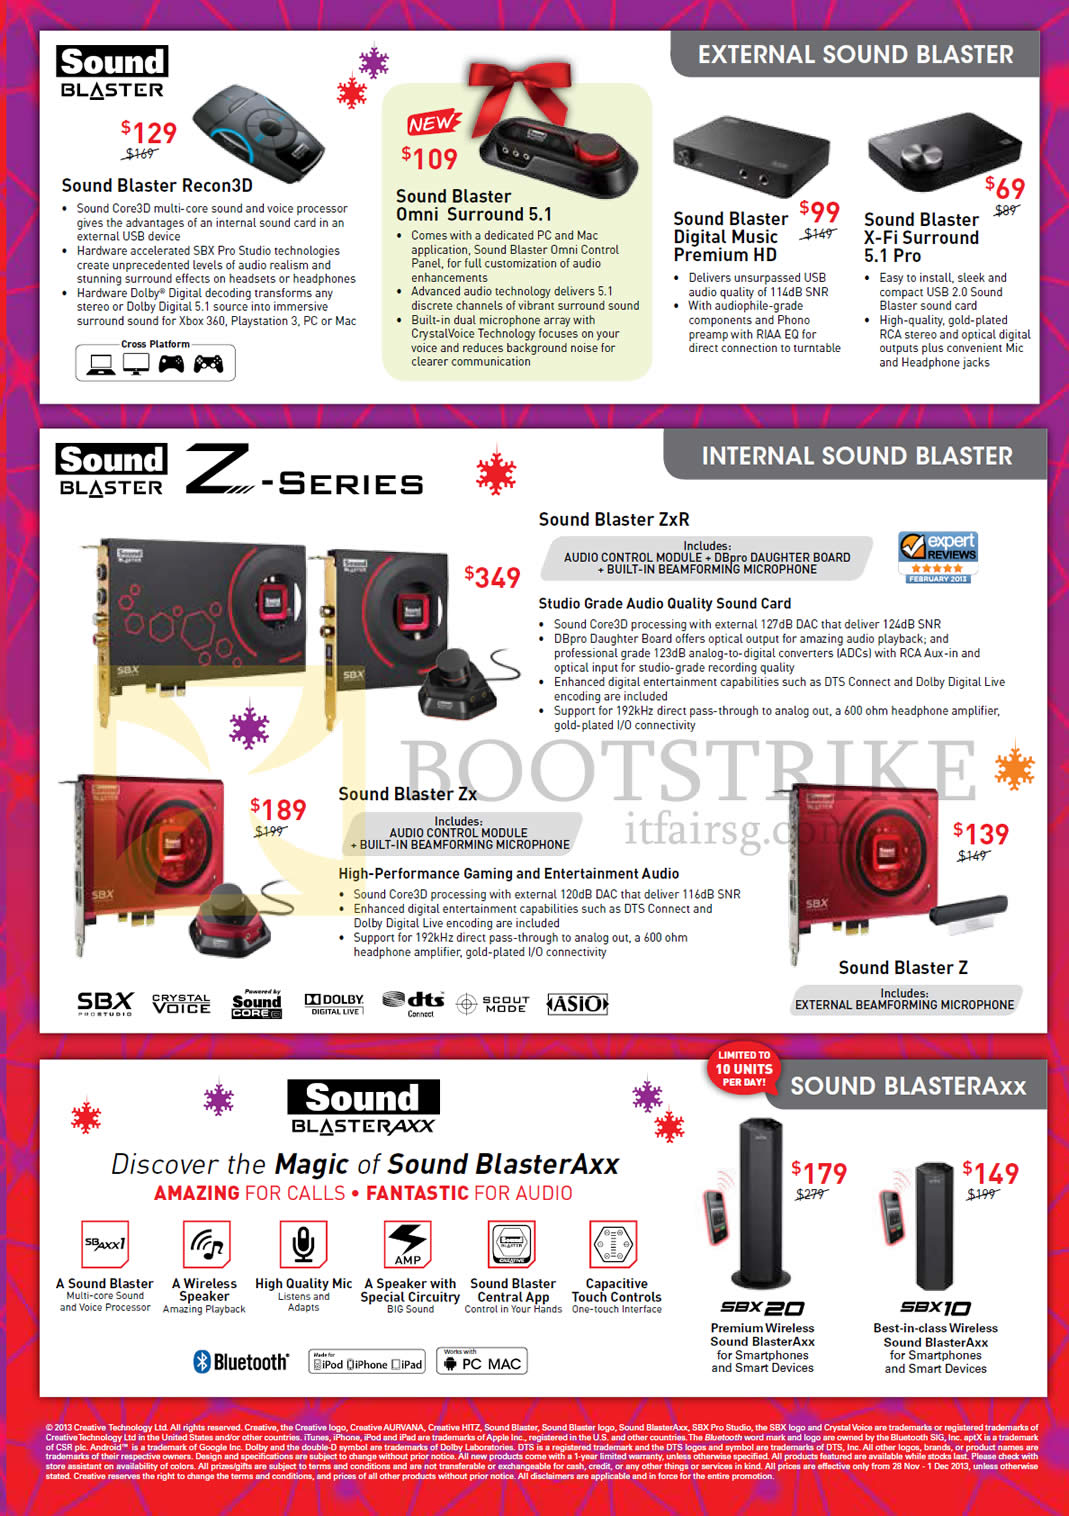 SITEX 2013 price list image brochure of Creative External Sound Blaster Recon 3D, Omni Surround, Digital Music, X-Fi Surround, ZXR, Zx, BlasterAxx